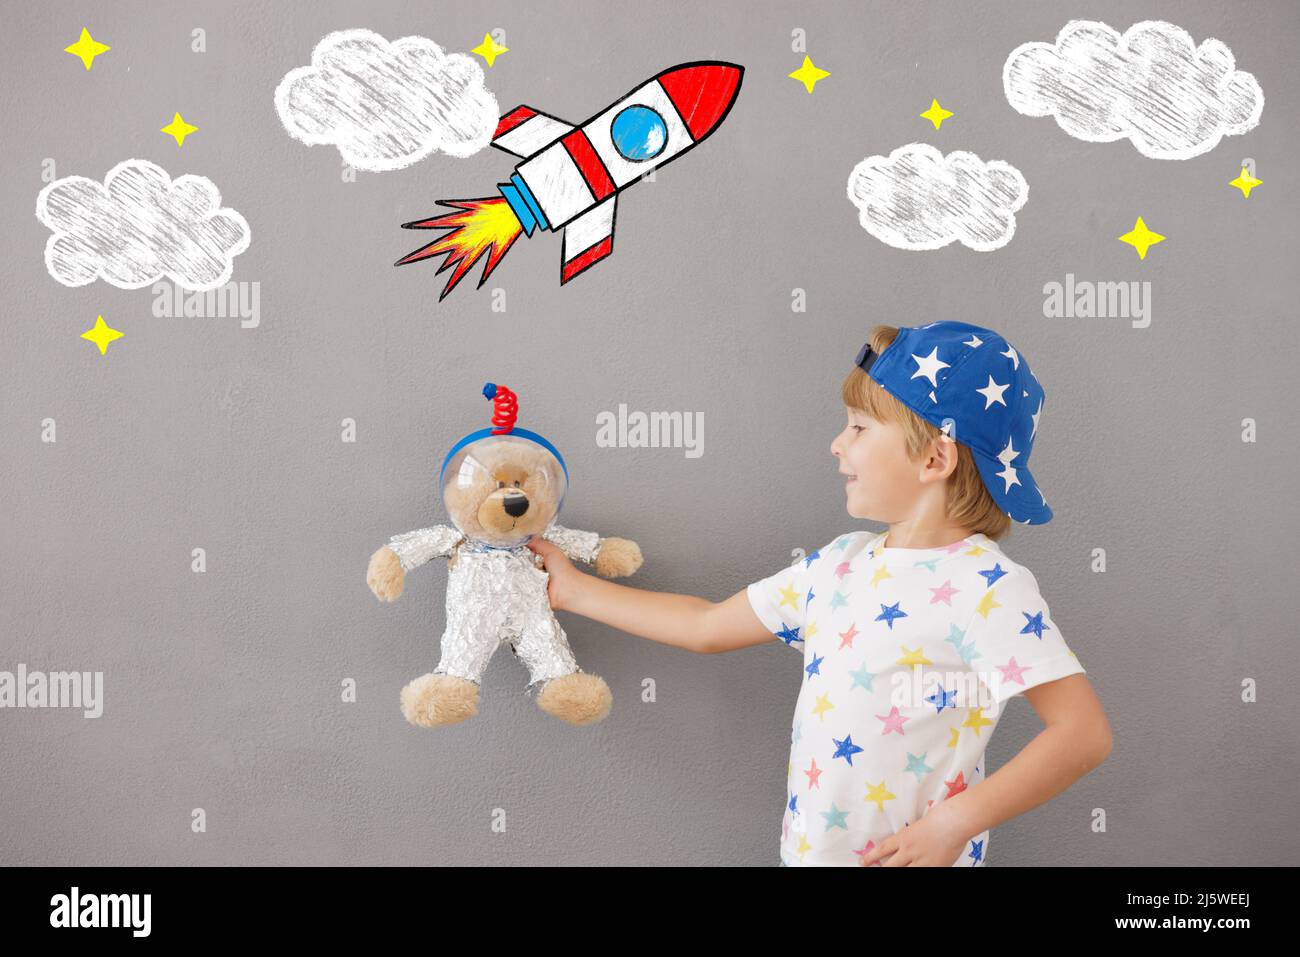 Niños Jugando Con Casco Y Cohete Astronauta Imagen de archivo - Imagen de  alegre, juego: 190532701